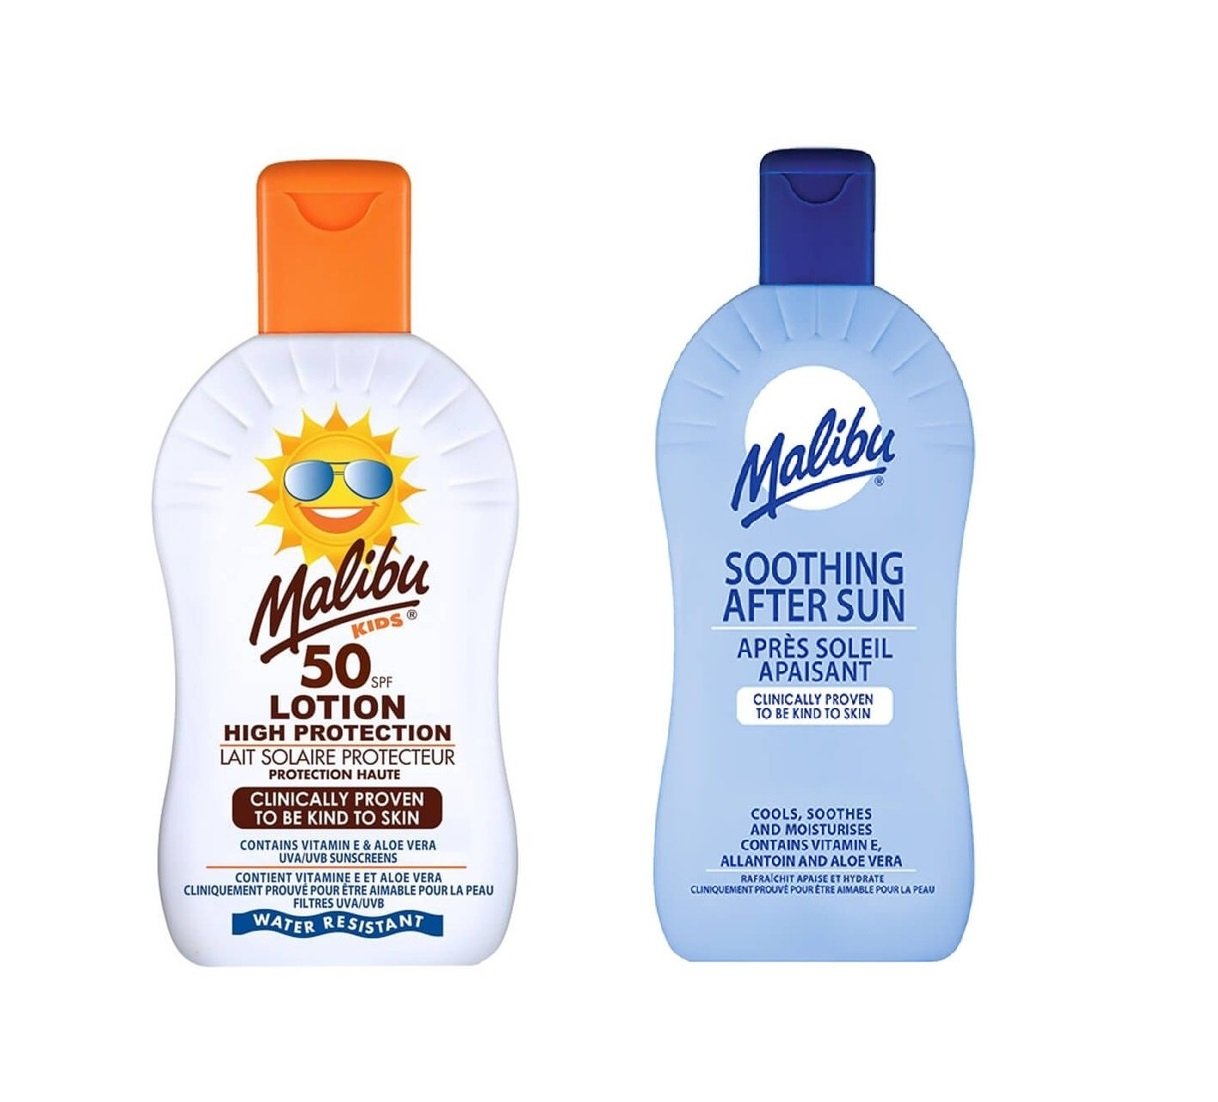 Malibu - Kids Lotion SPF 50 200 ml + Malibu - Soothing After Sun Lotion 400 ml